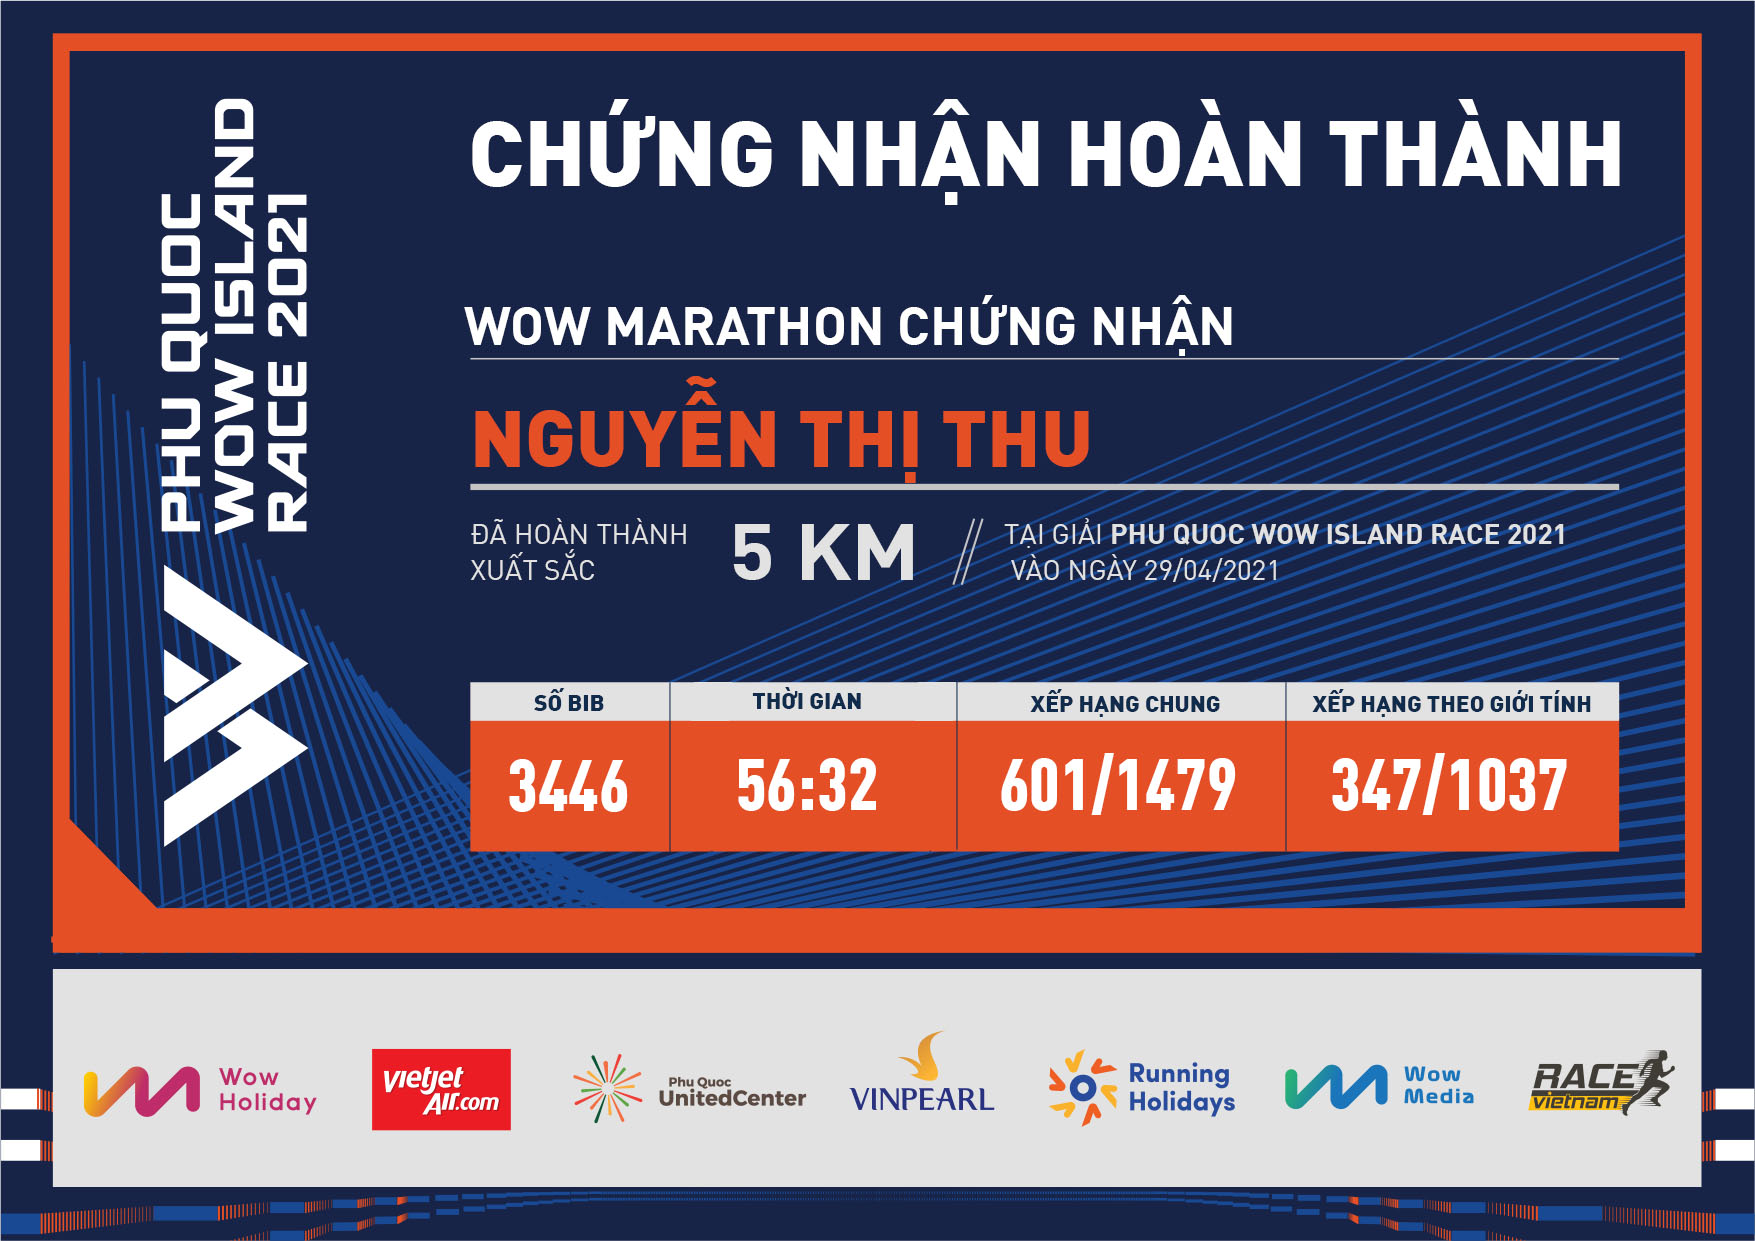 3446 - Nguyễn Thị Thu